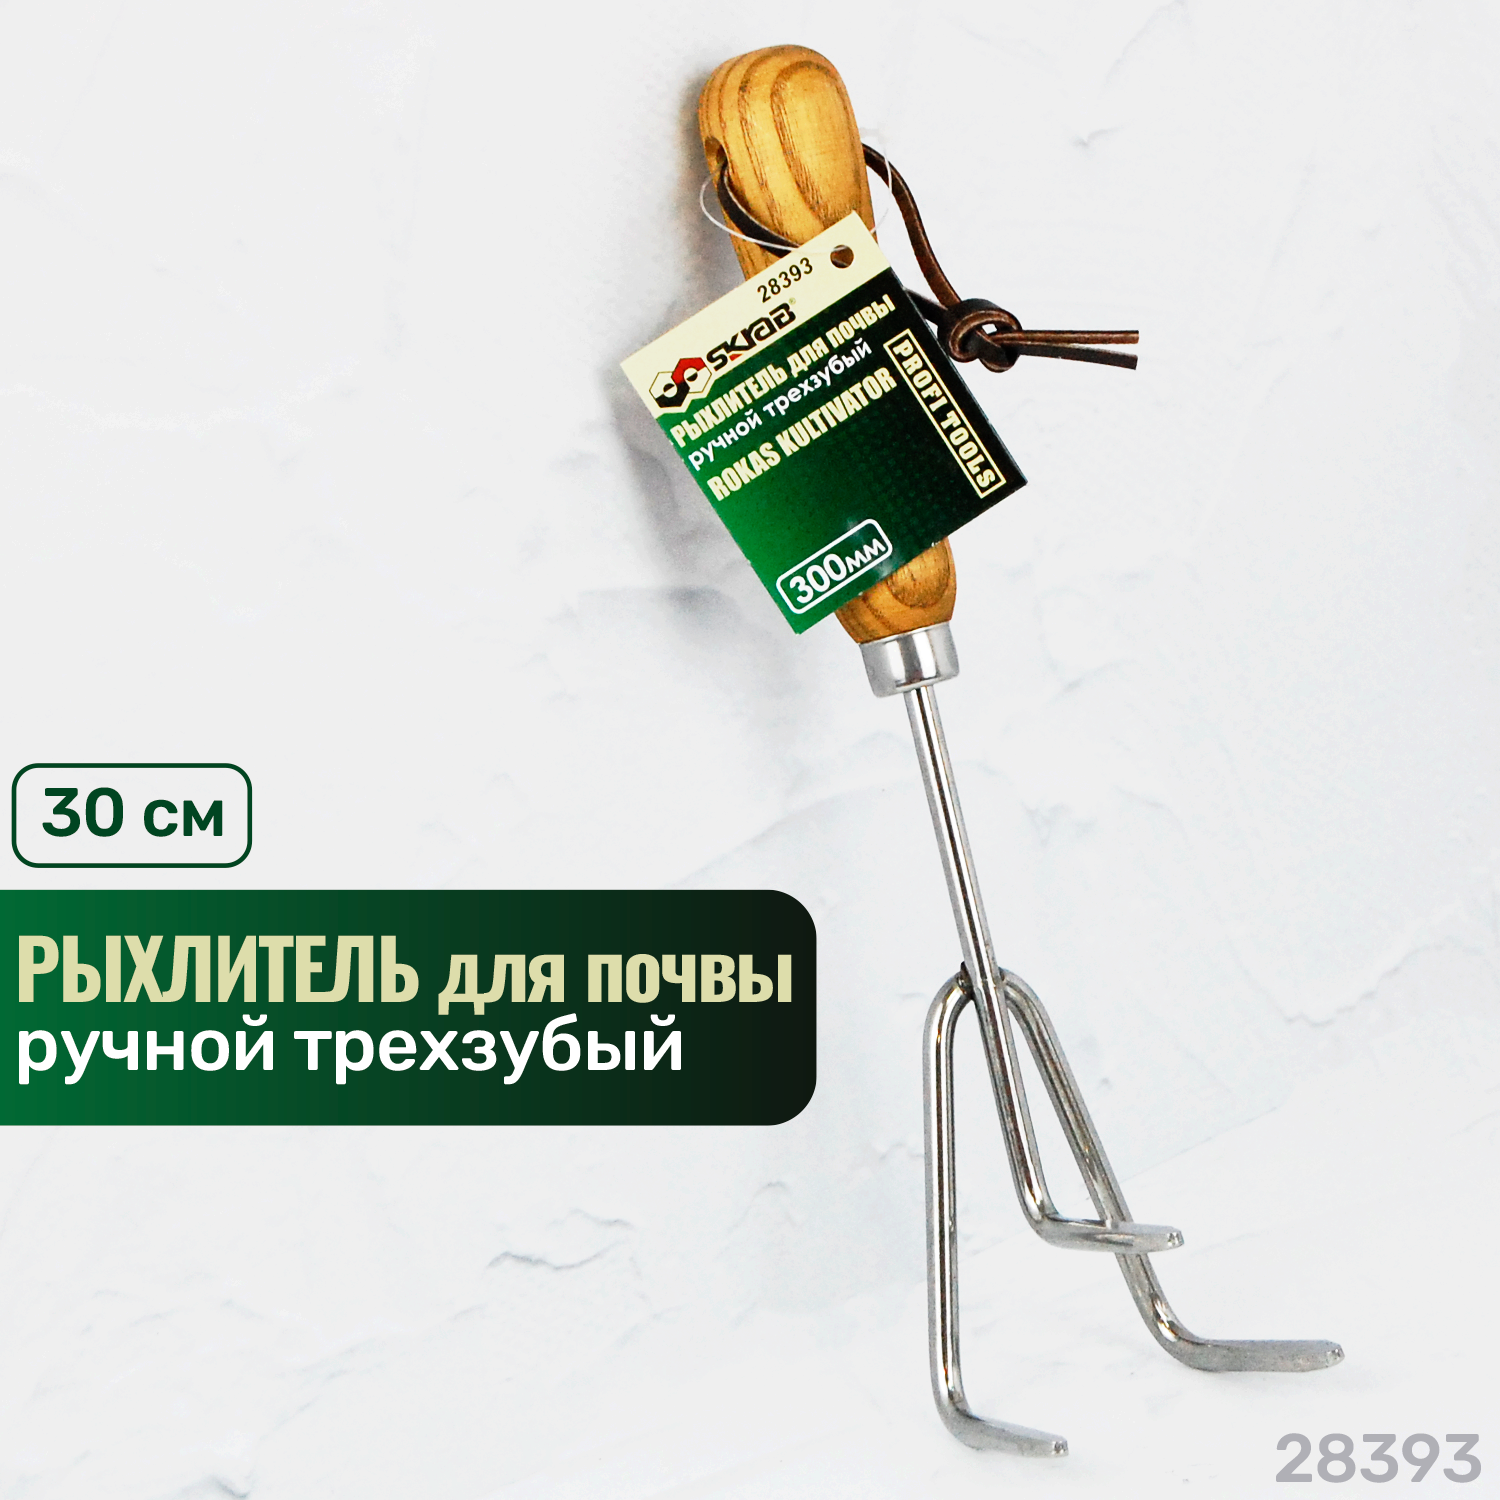 Культиватор SKRAB Ручной трехзубый, 28393